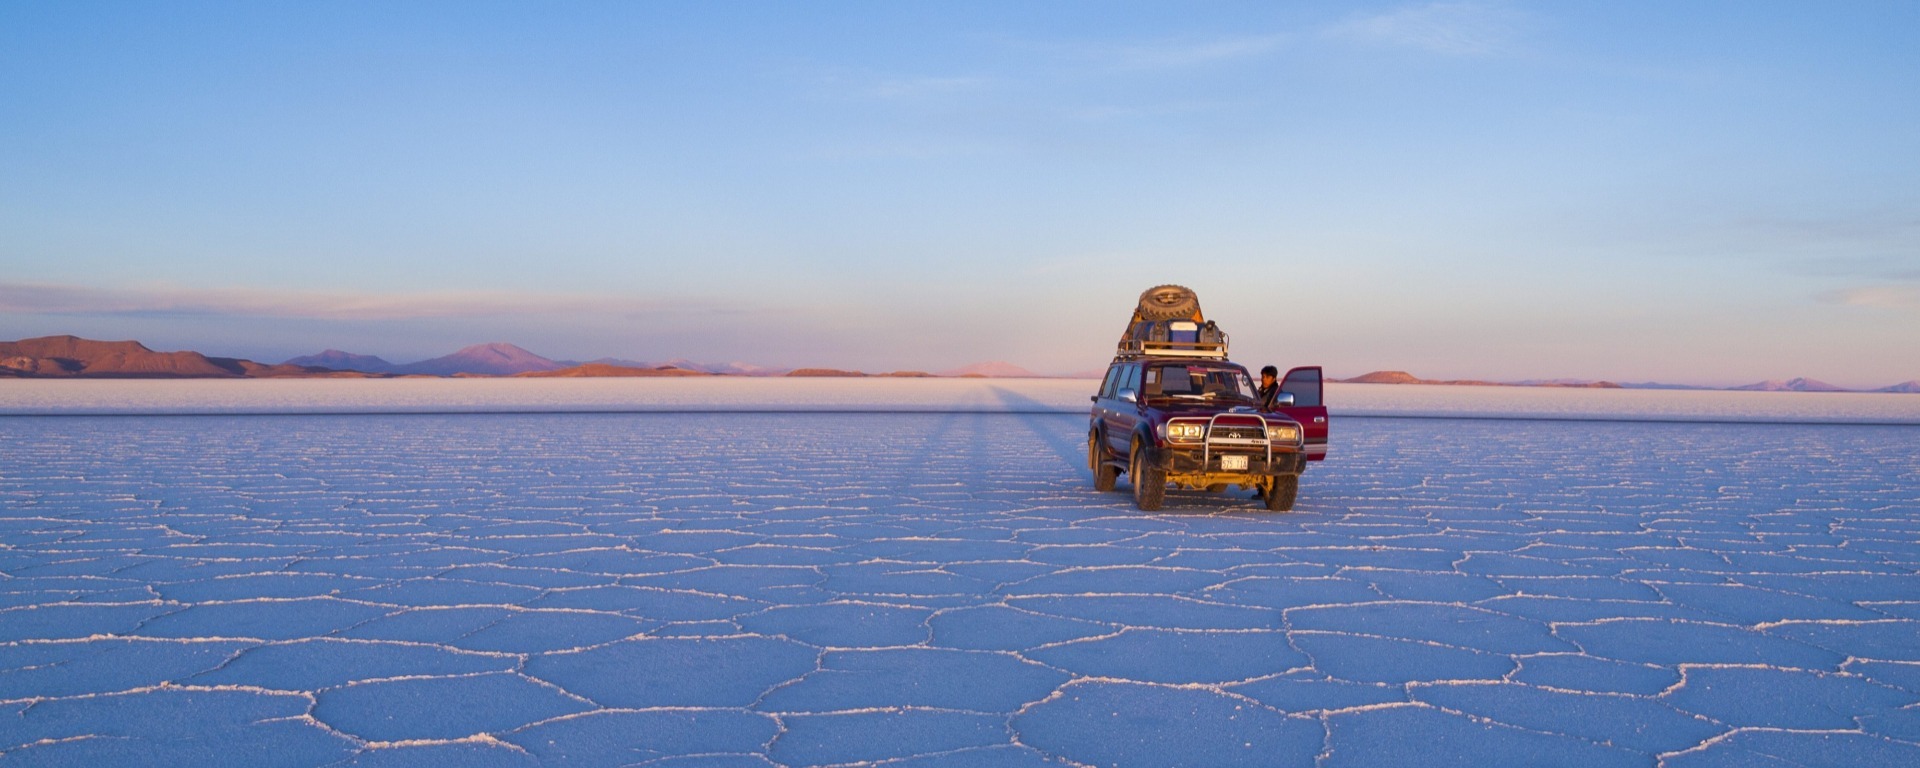 Salt Flats Bolivia